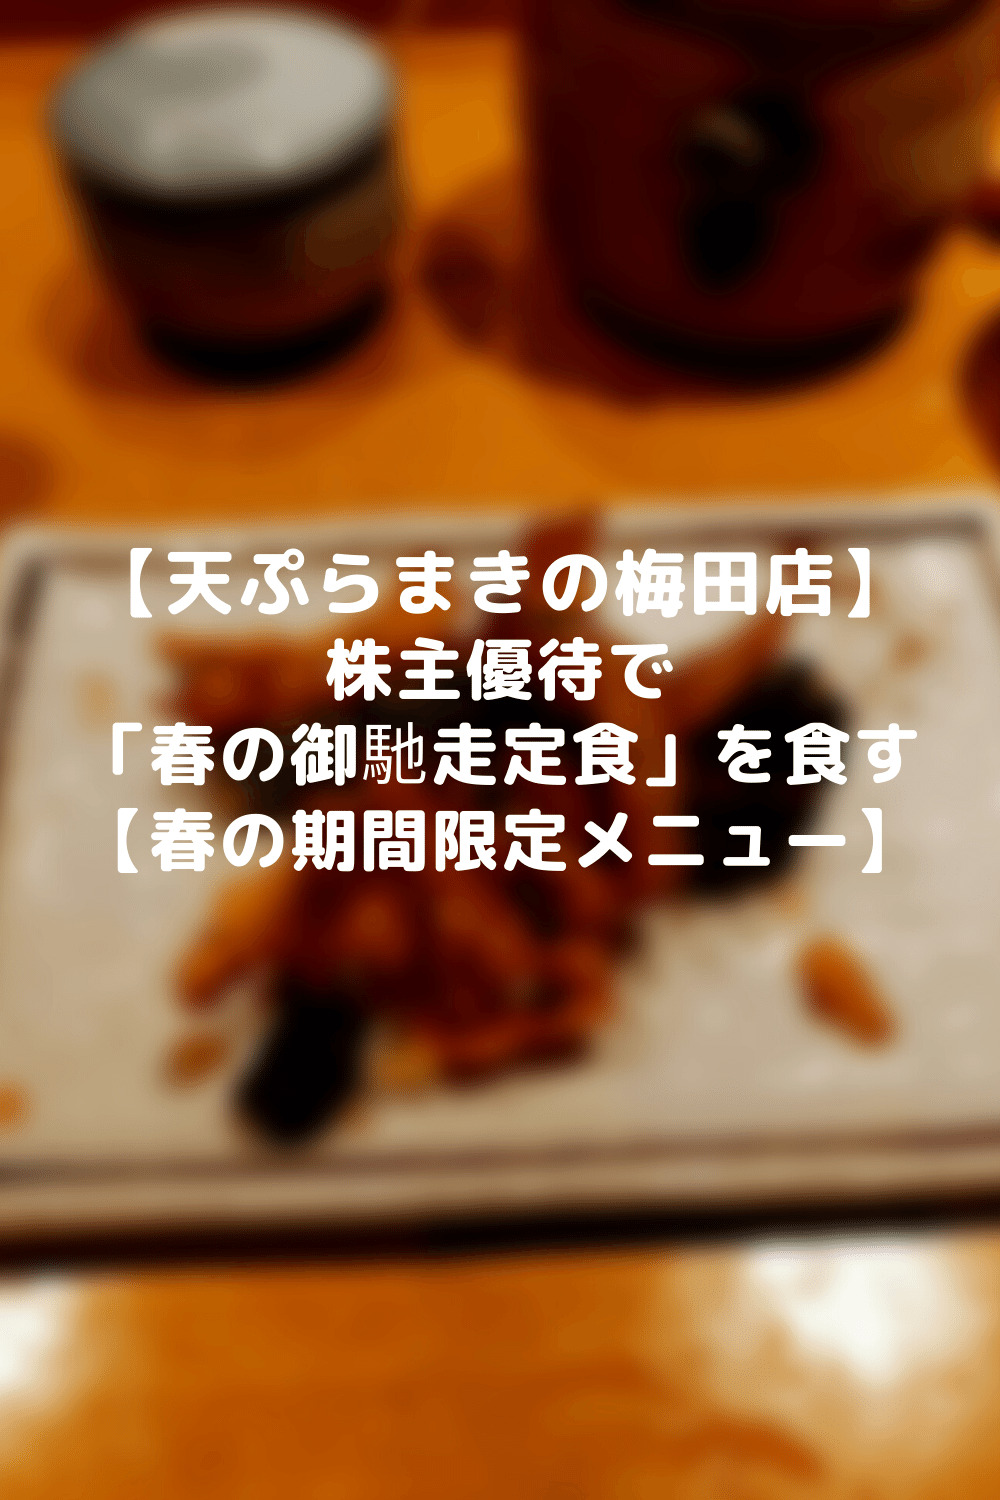 トリドール 3397 株主優待 天ぷらまきの梅田店 春の御馳走定食 これで本当に大丈夫 マッピーワーク